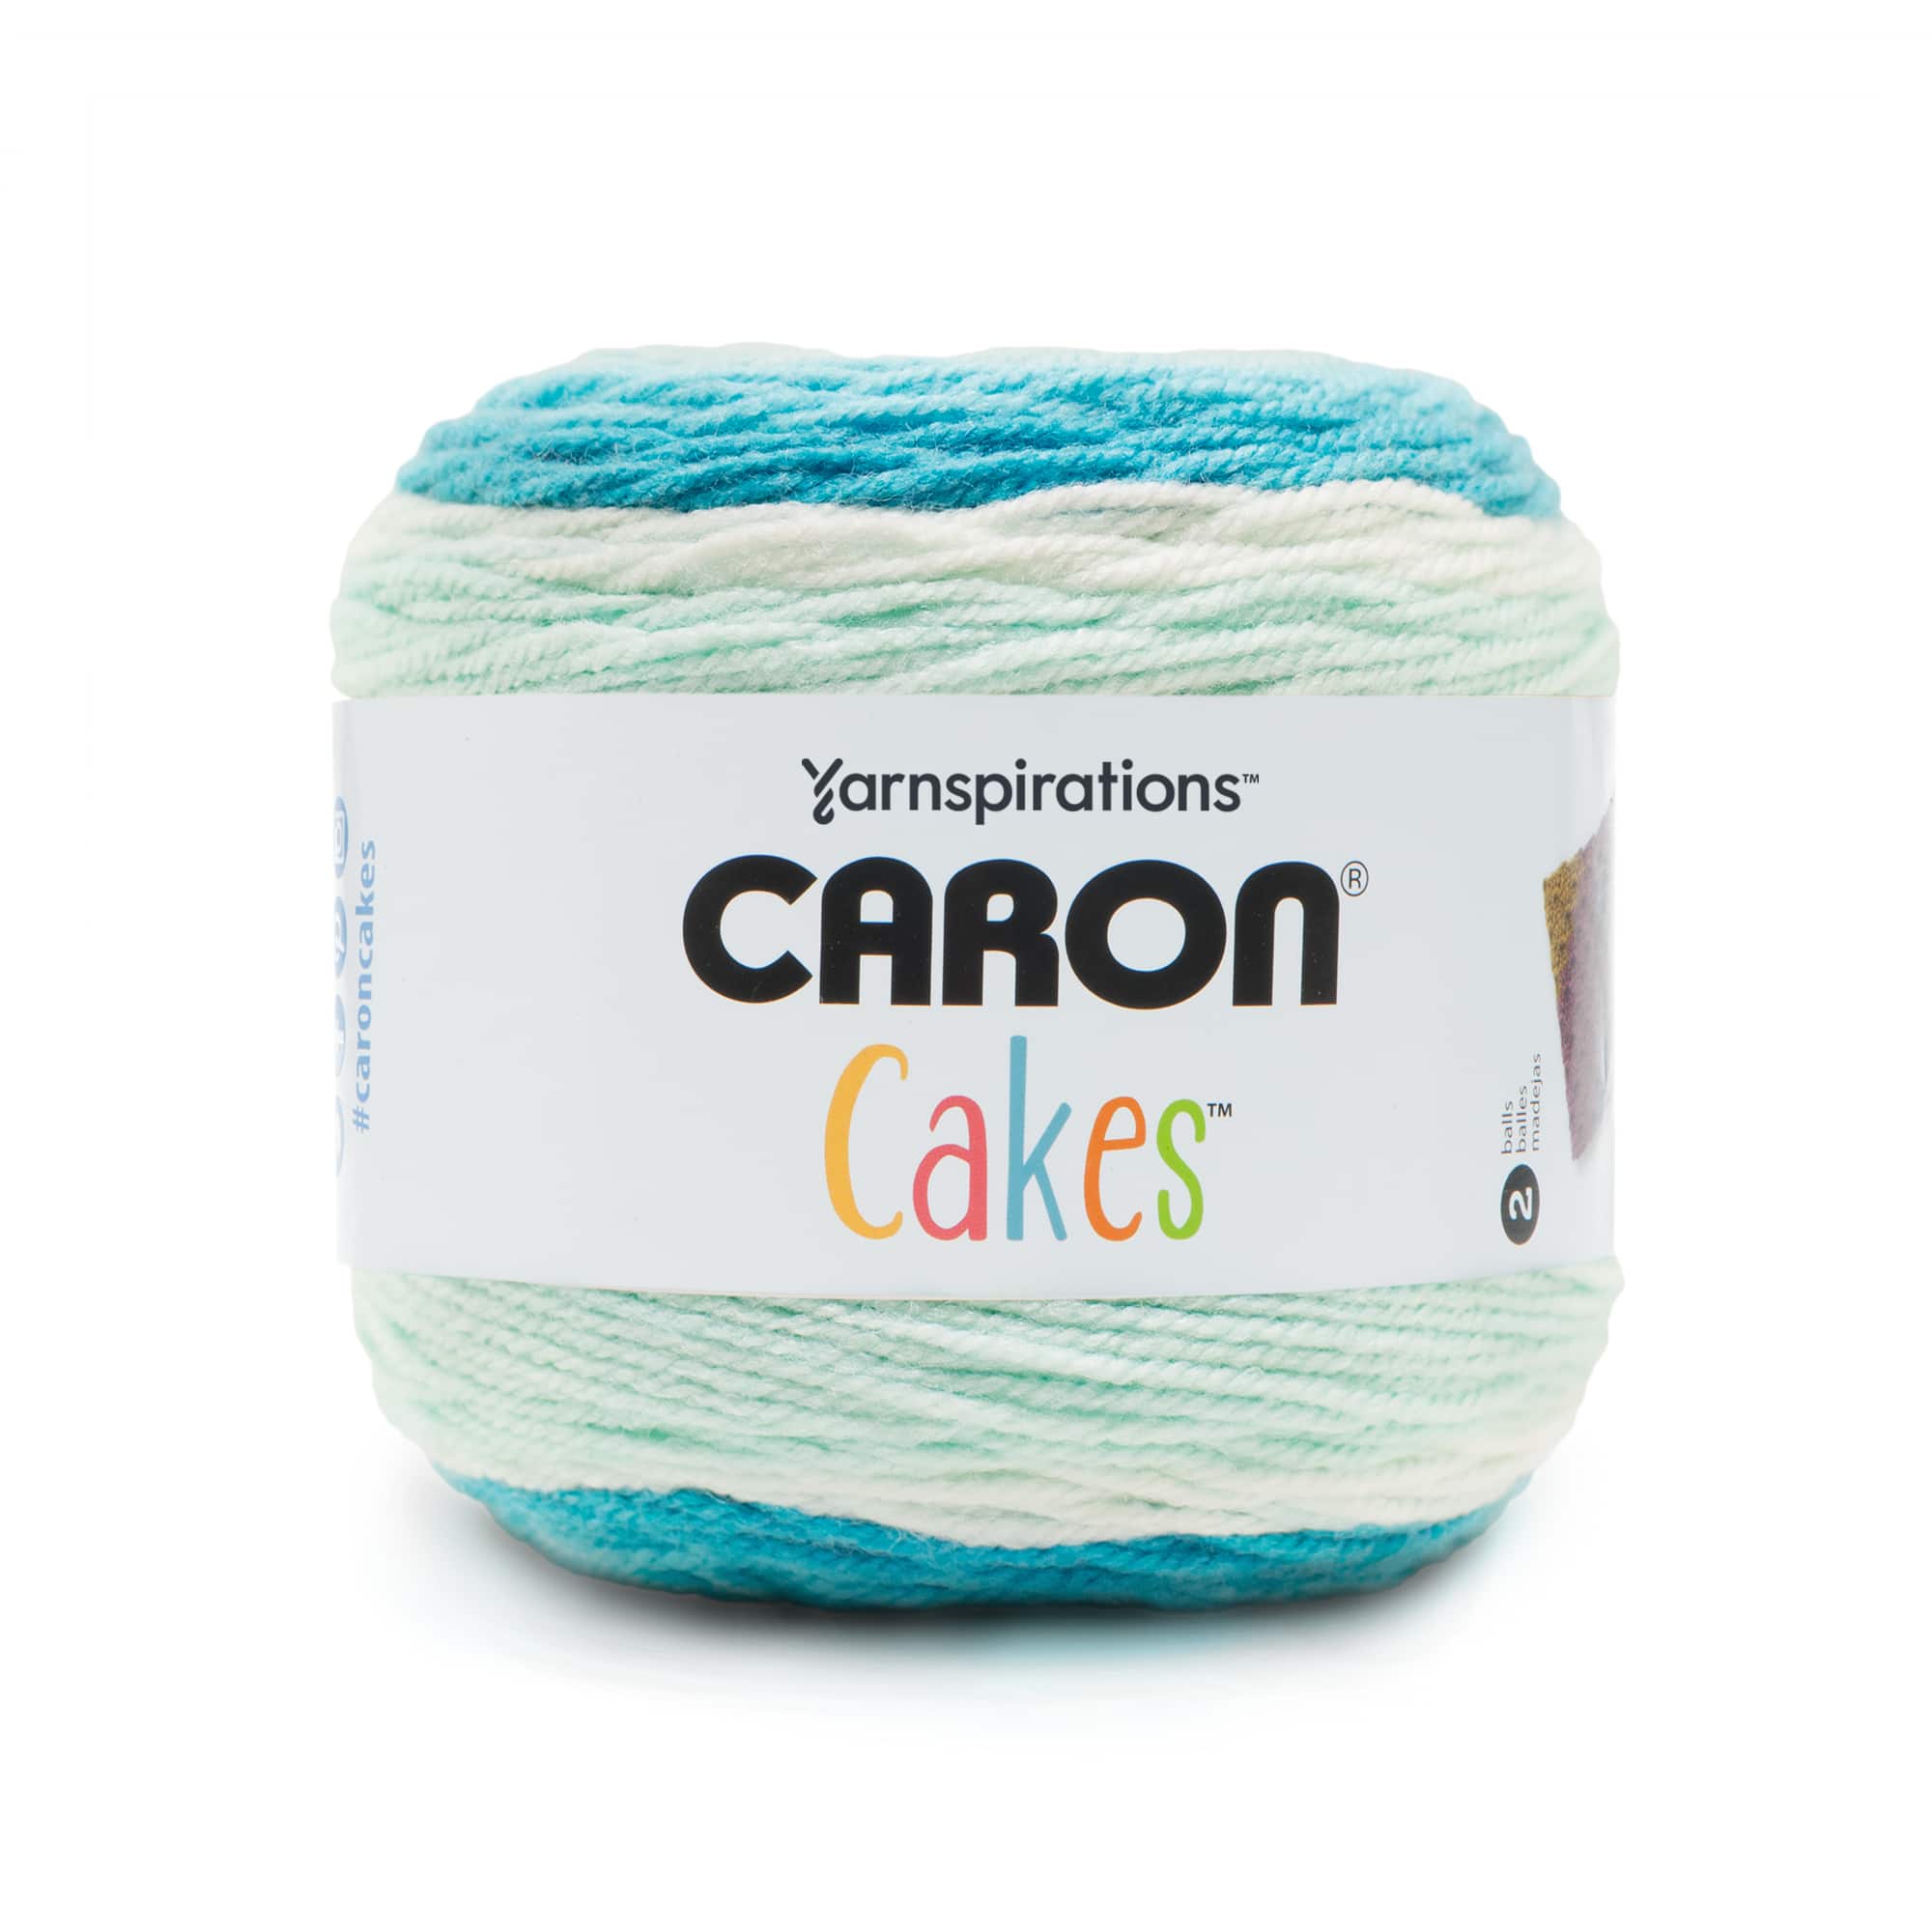 Caron 7oz Cakes